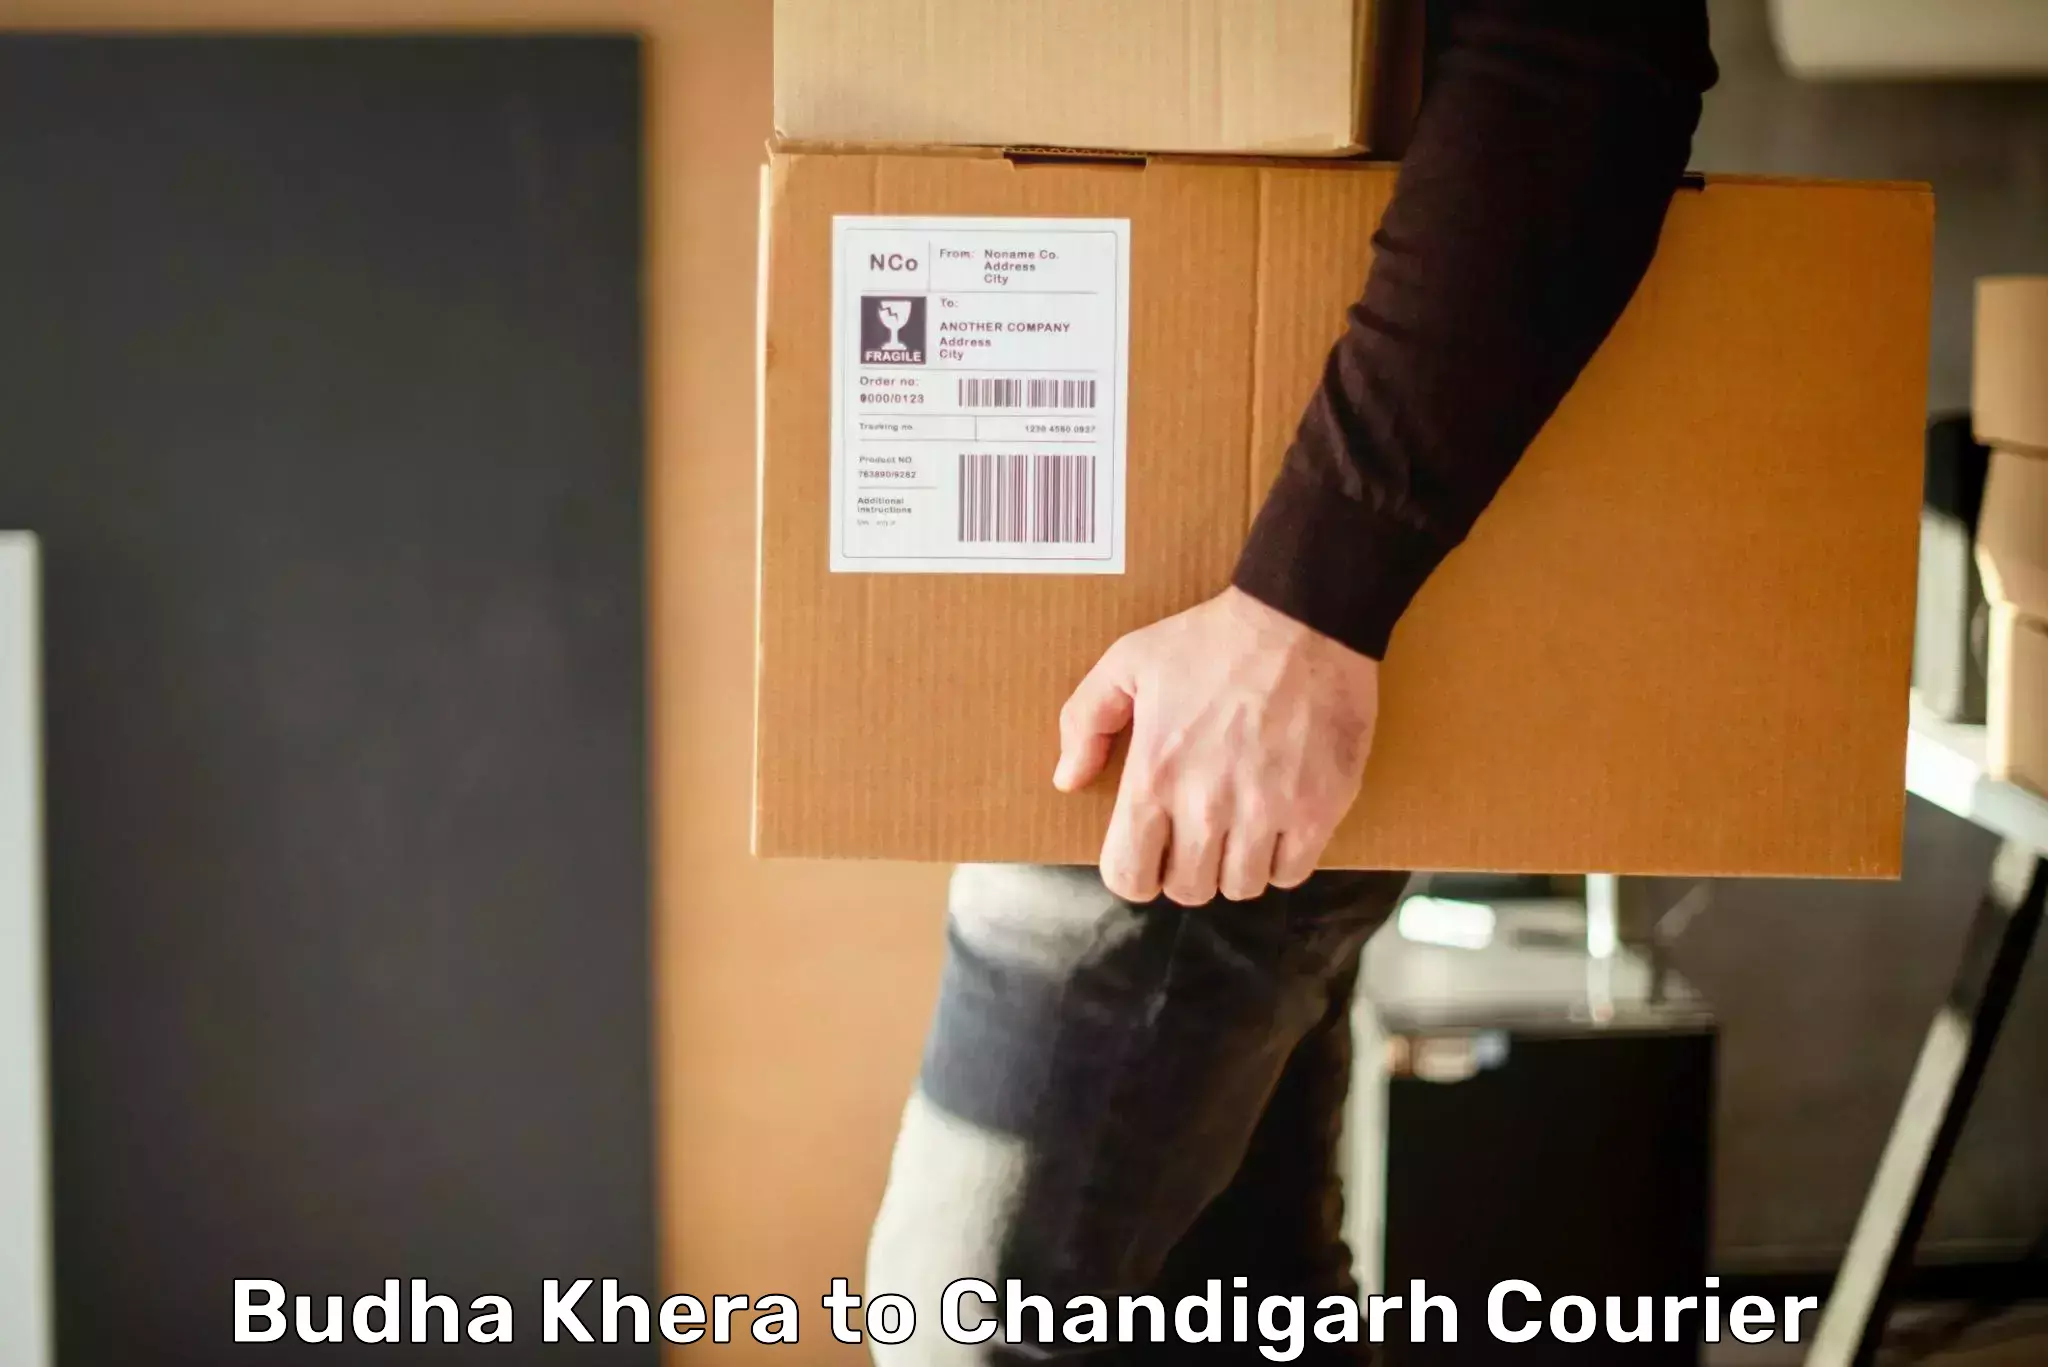 Nationwide shipping services Budha Khera to Panjab University Chandigarh